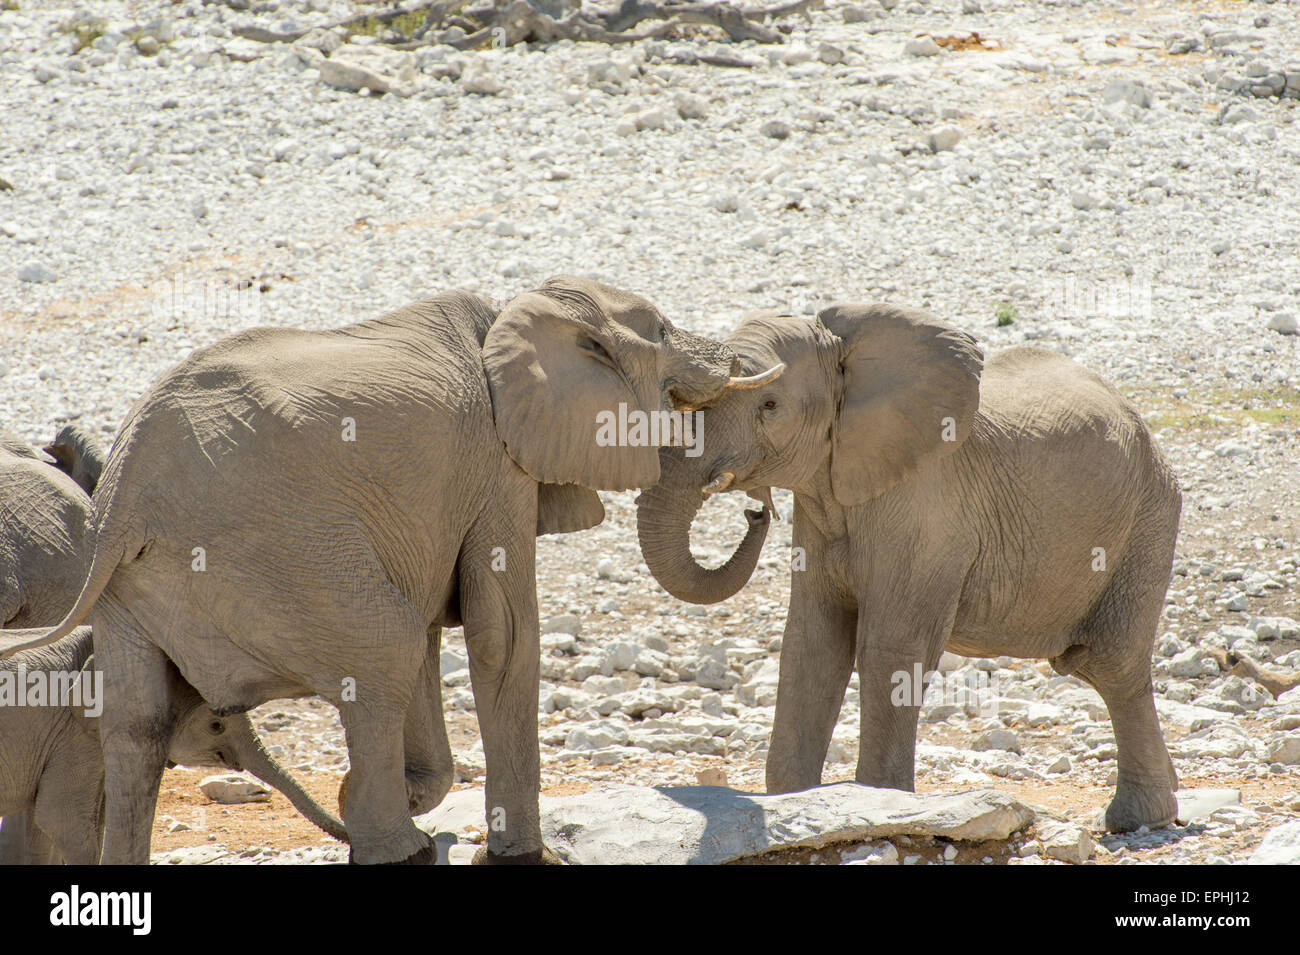 Africa, Namibia. Etosha National Park. Young elephants playing together. Stock Photo